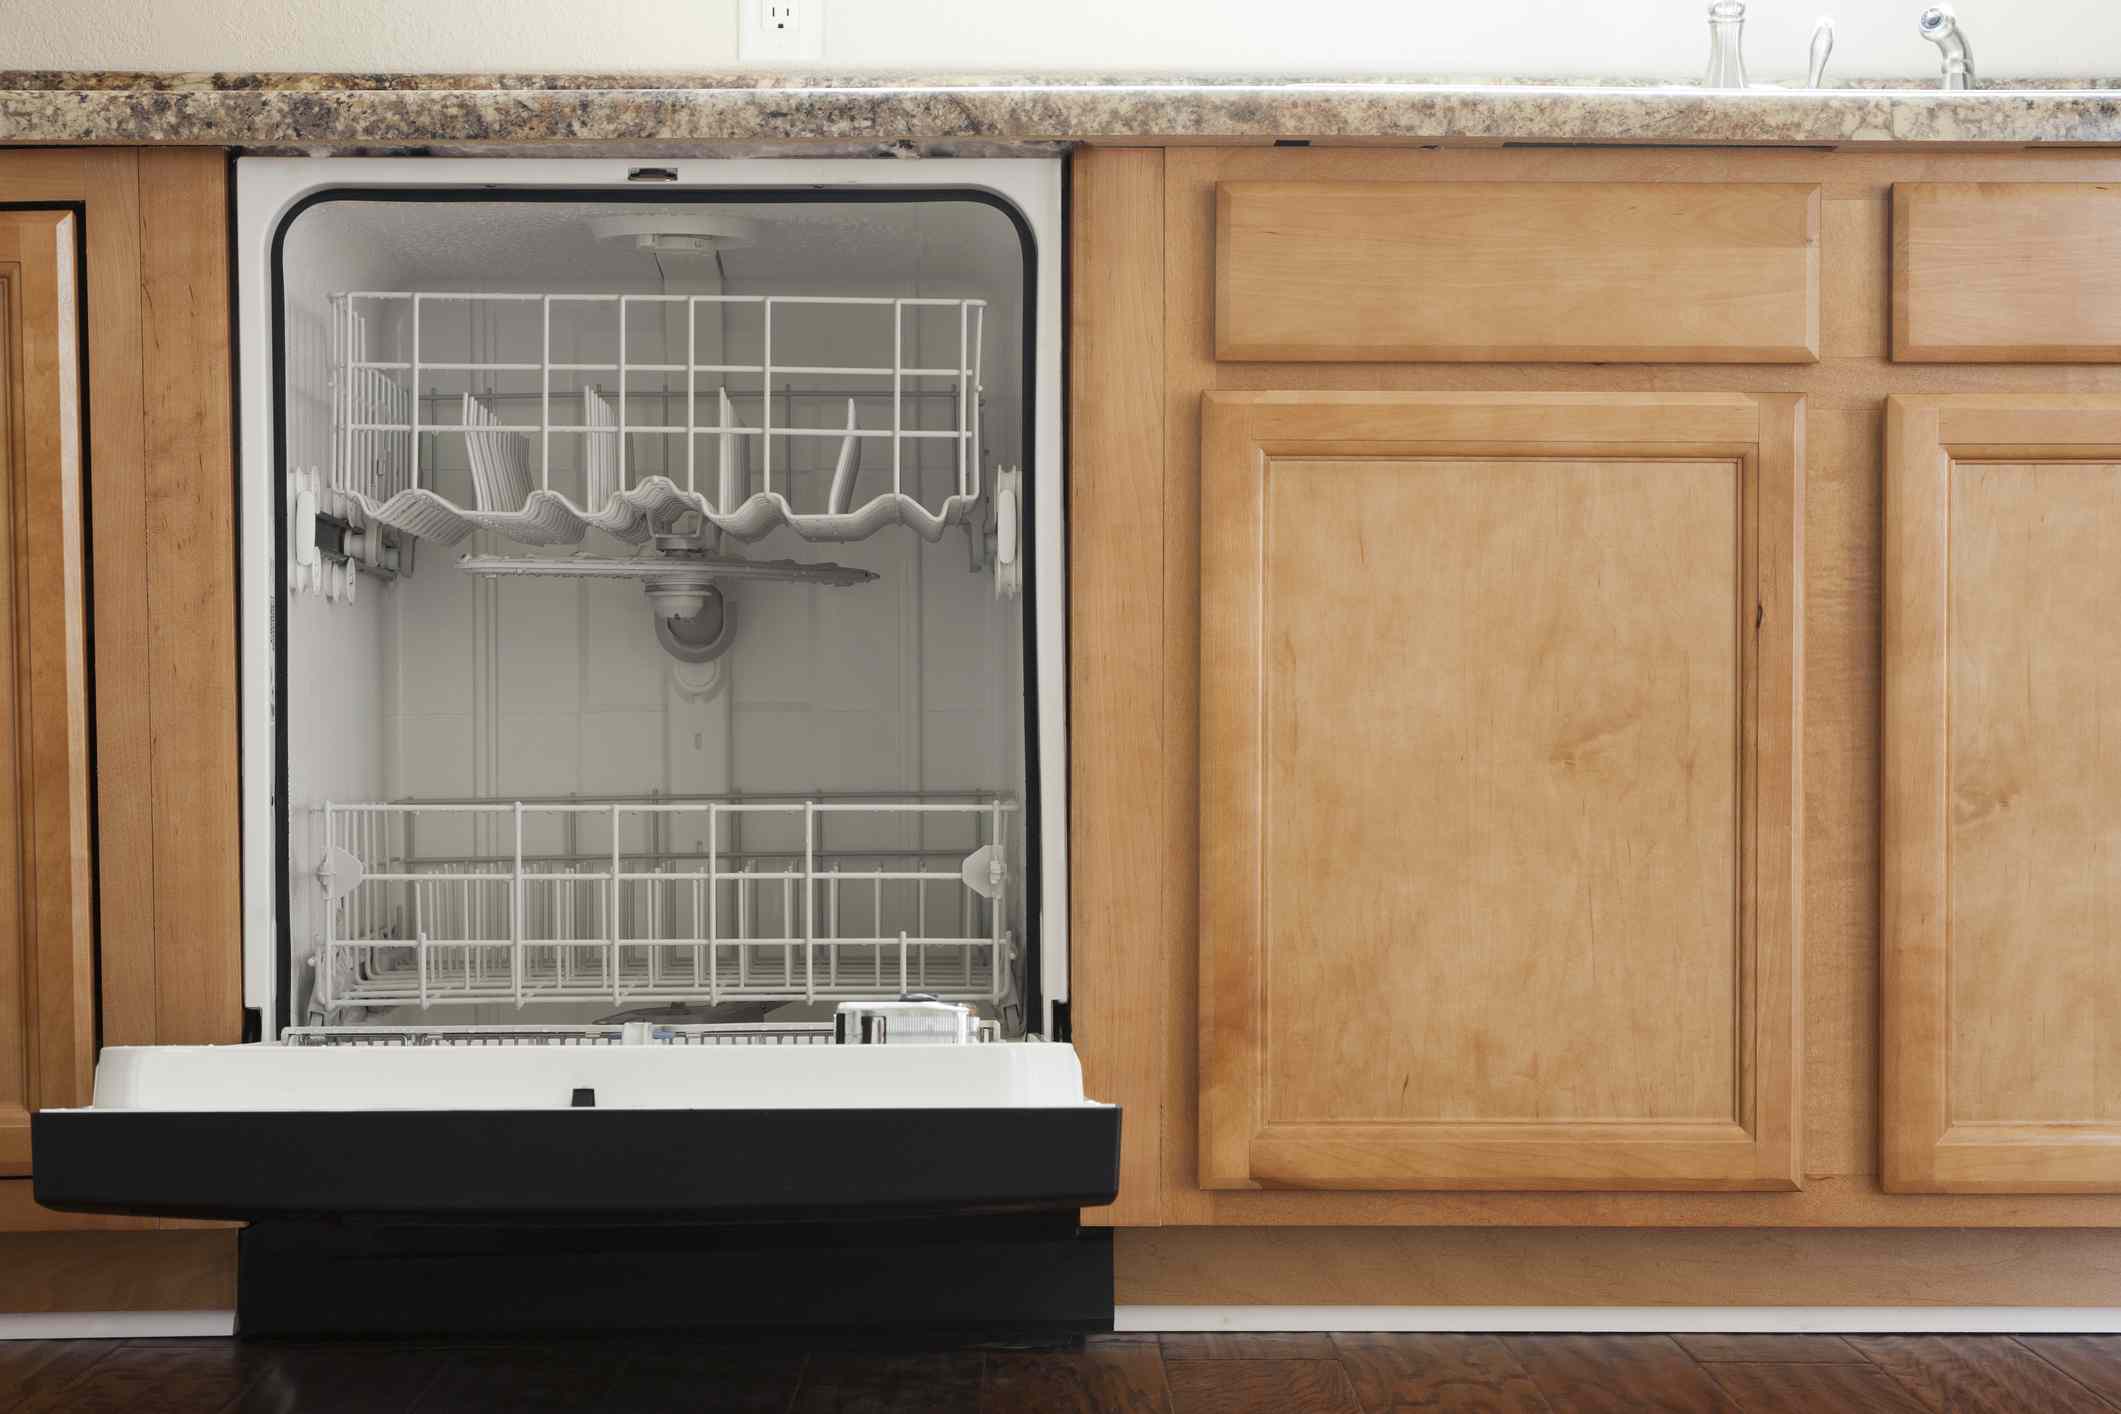 Why Dishwasher Leaking